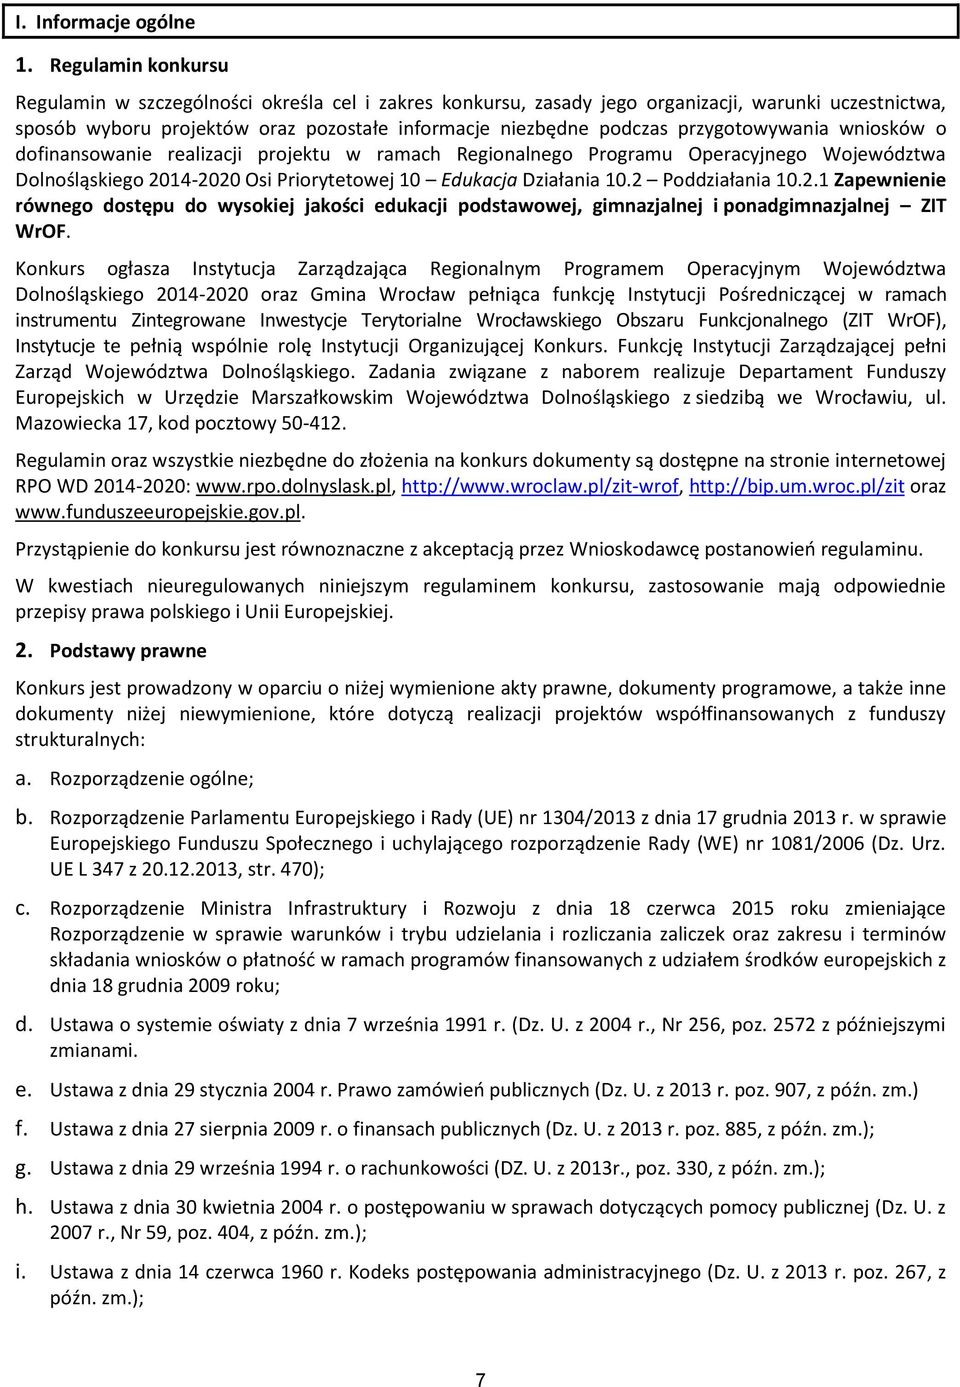 przygotowywania wniosków o dofinansowanie realizacji projektu w ramach Regionalnego Programu Operacyjnego Województwa Dolnośląskiego 2014-2020 Osi Priorytetowej 10 Edukacja Działania 10.